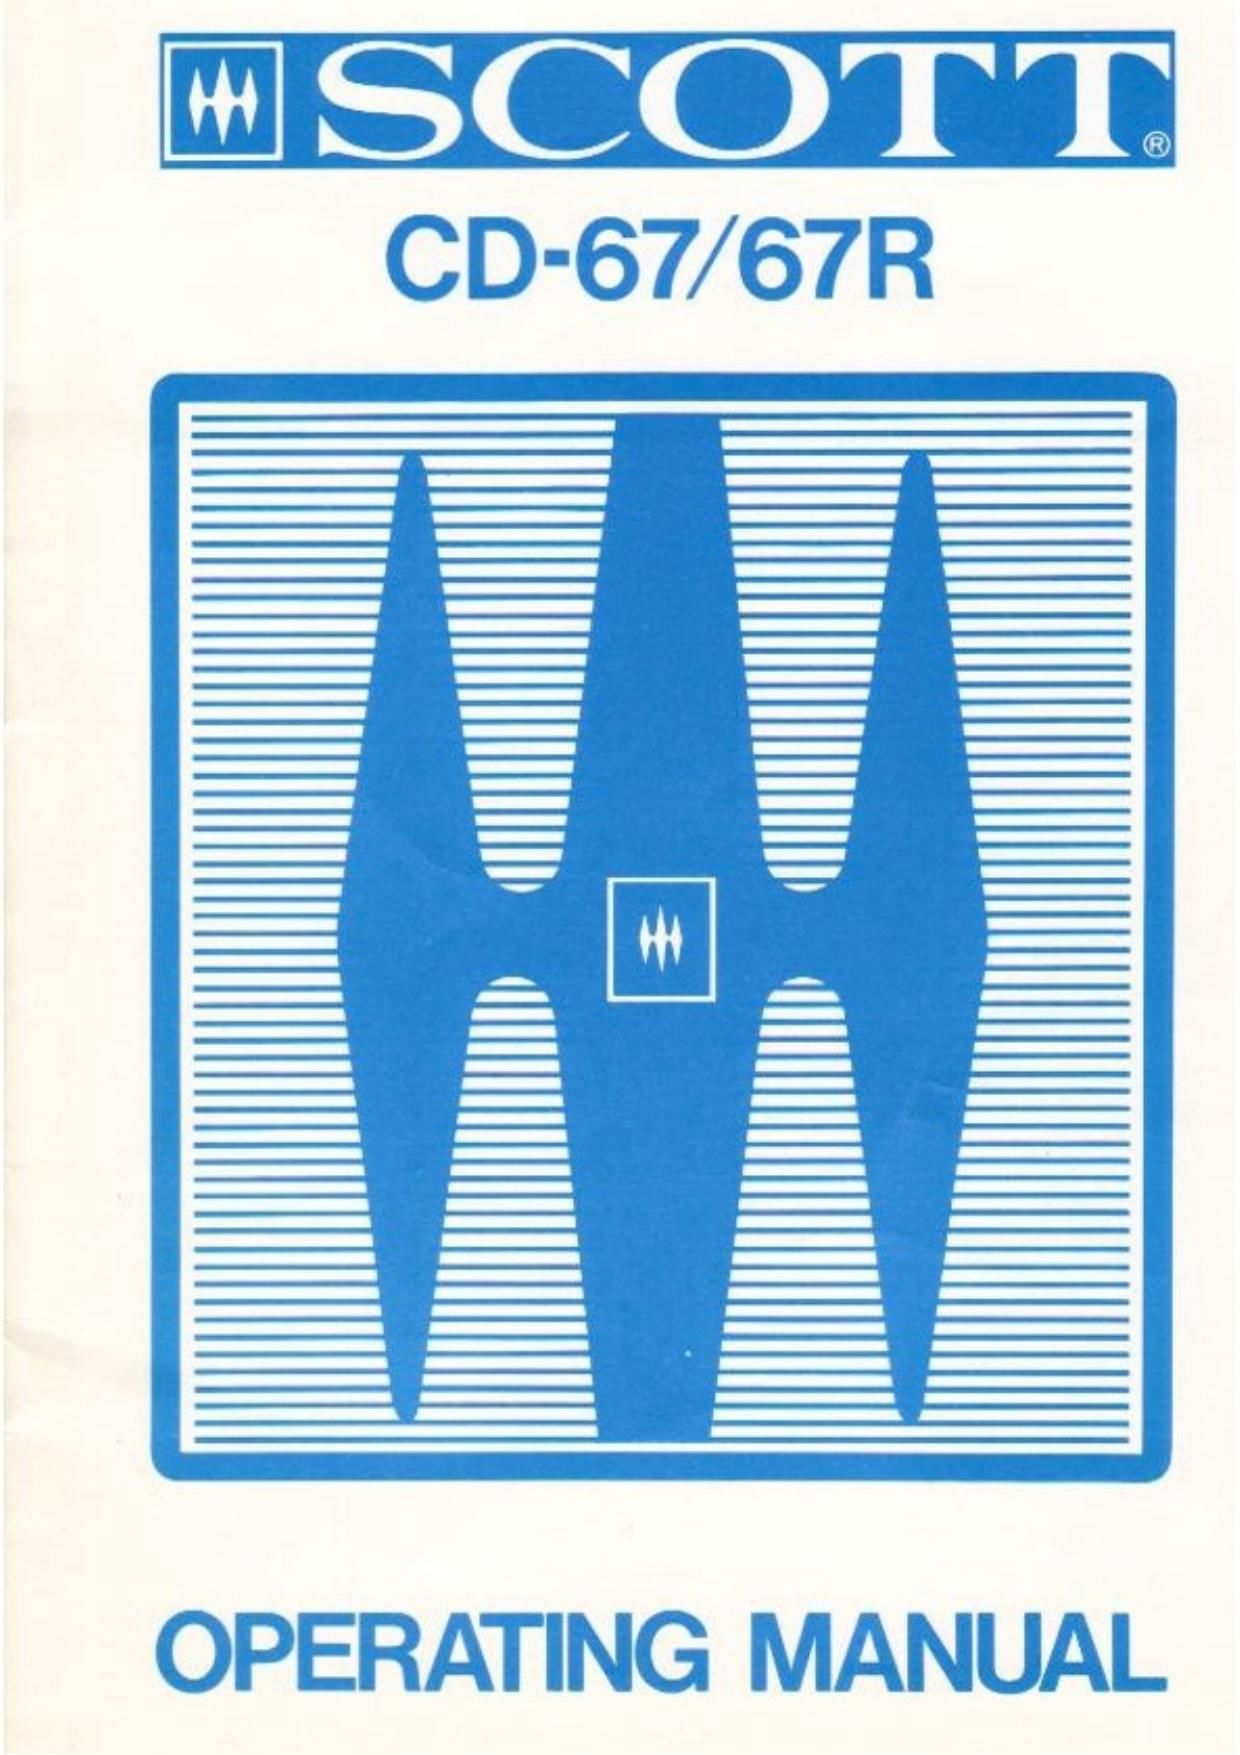 Scott CD 67 CD 67R Owners Manual